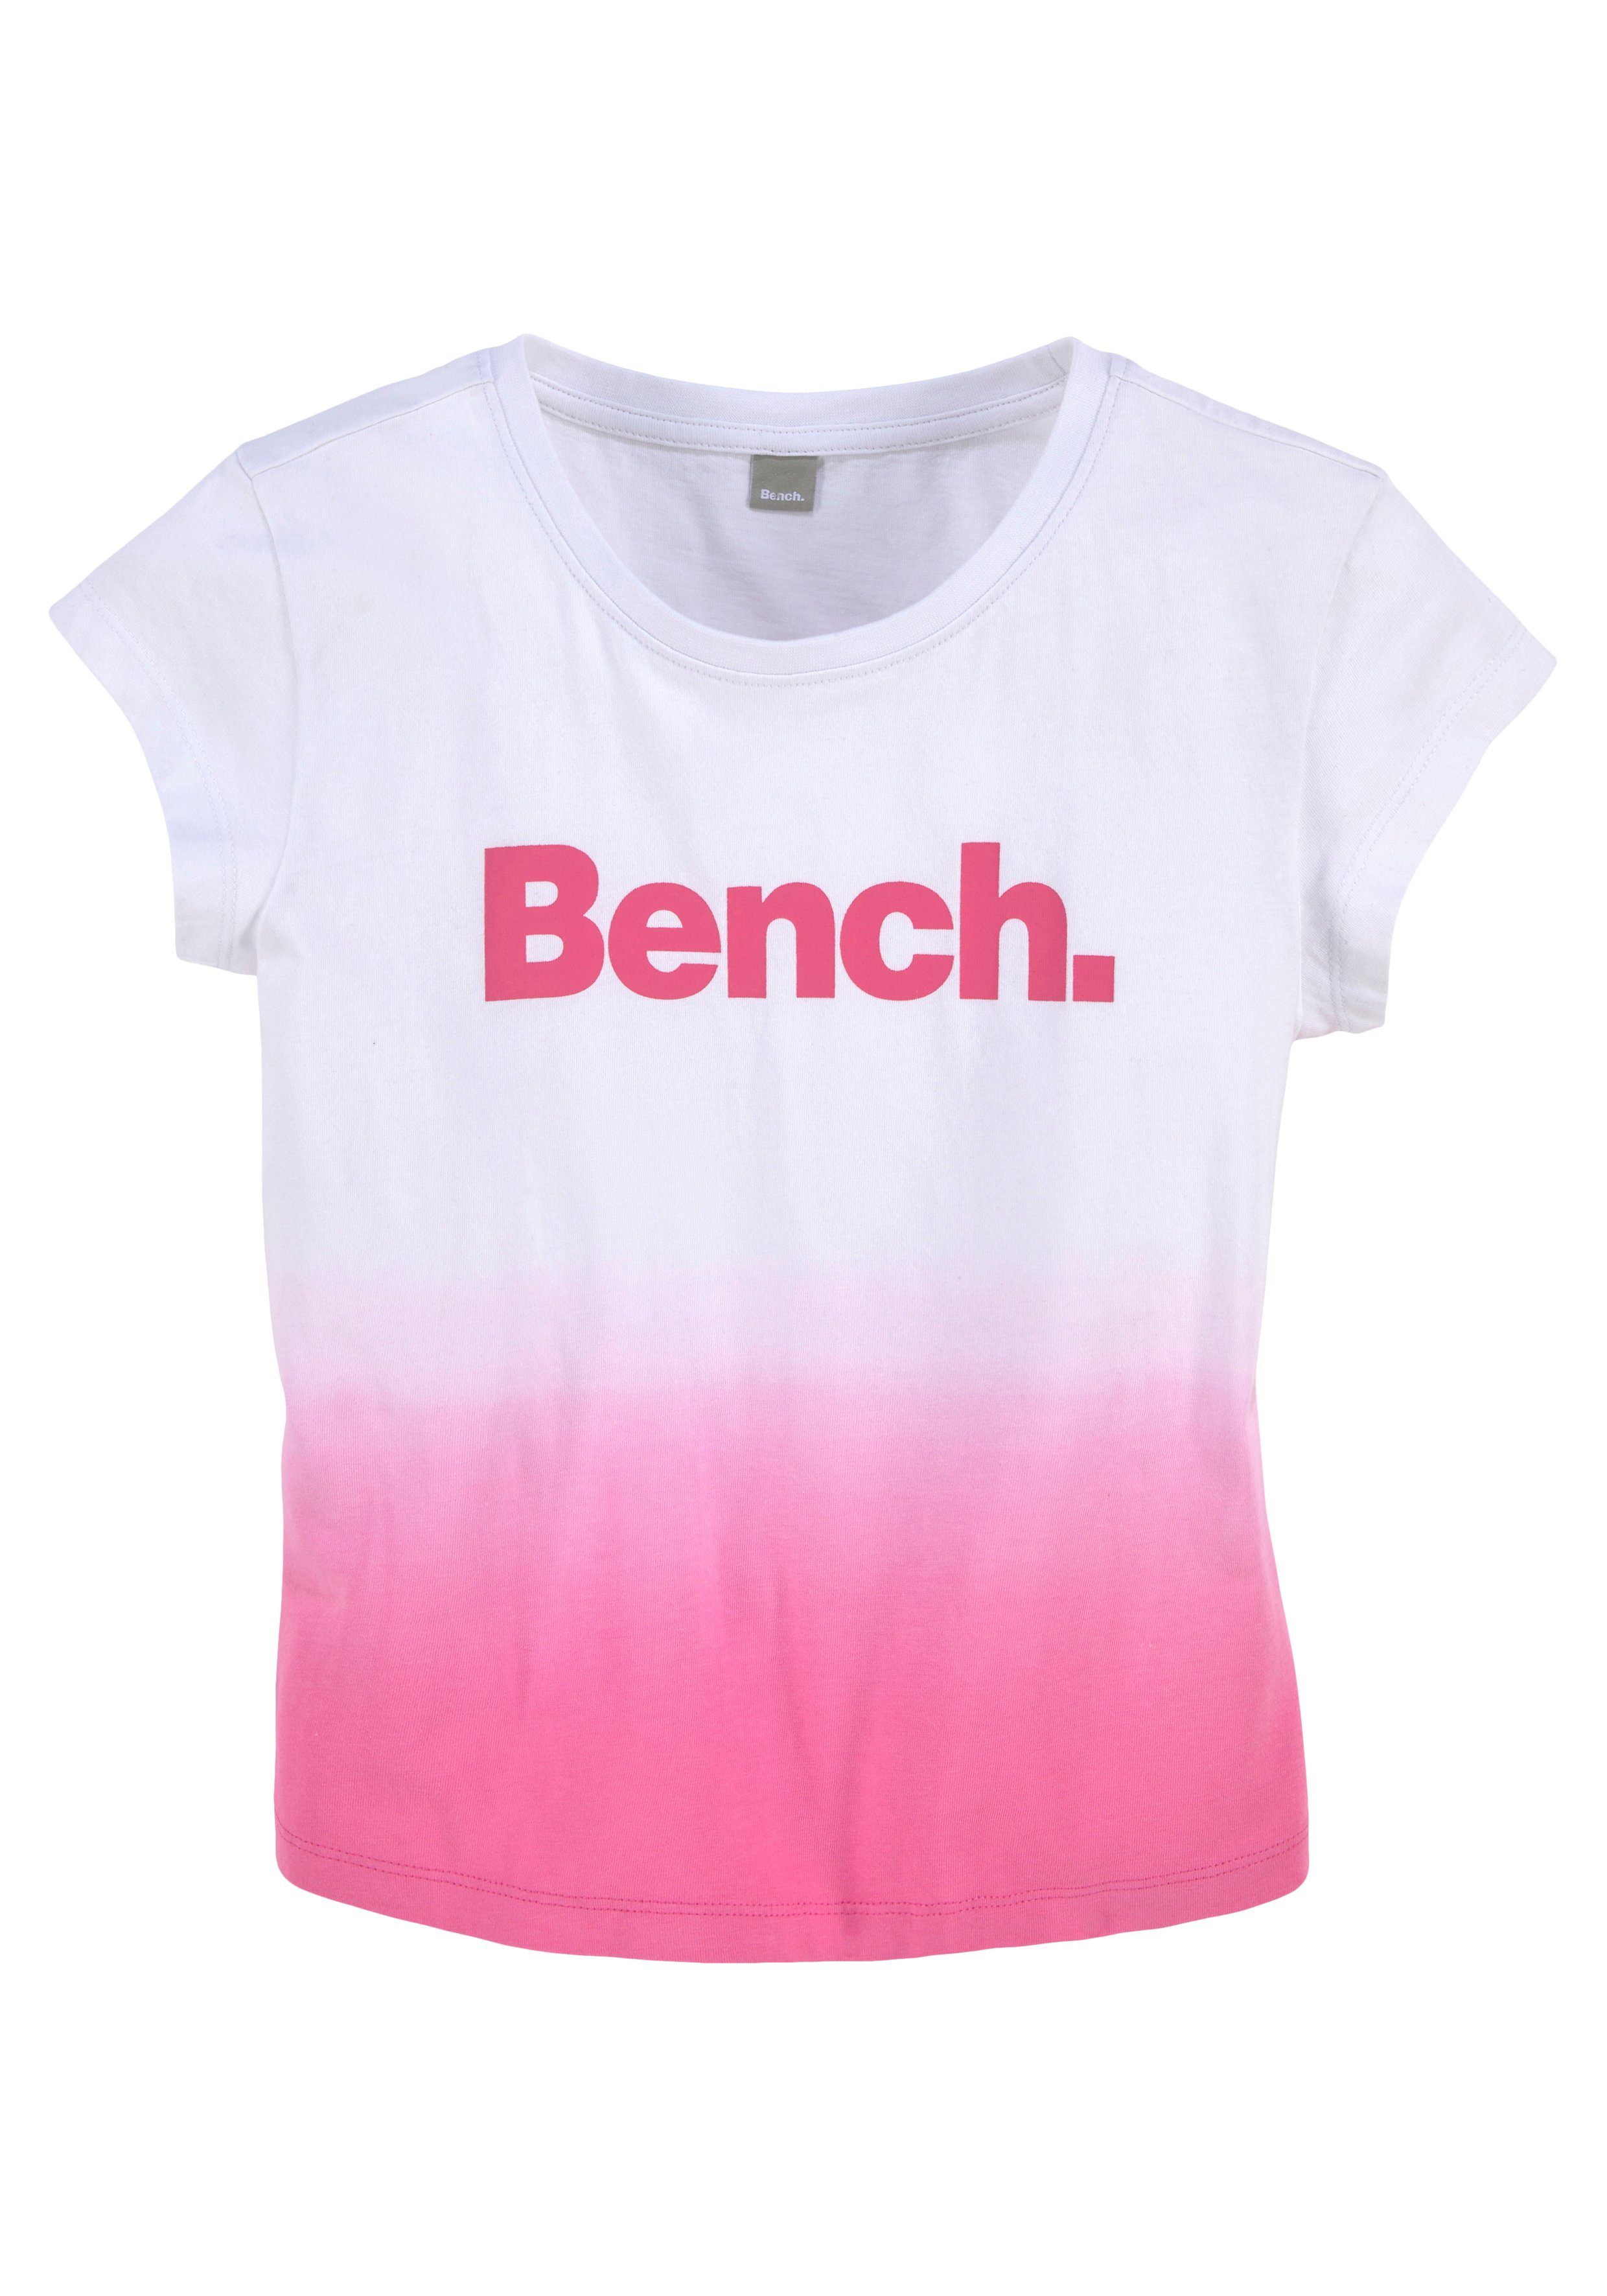 Bench. T-Shirt Farbverlauf grade Form kurze